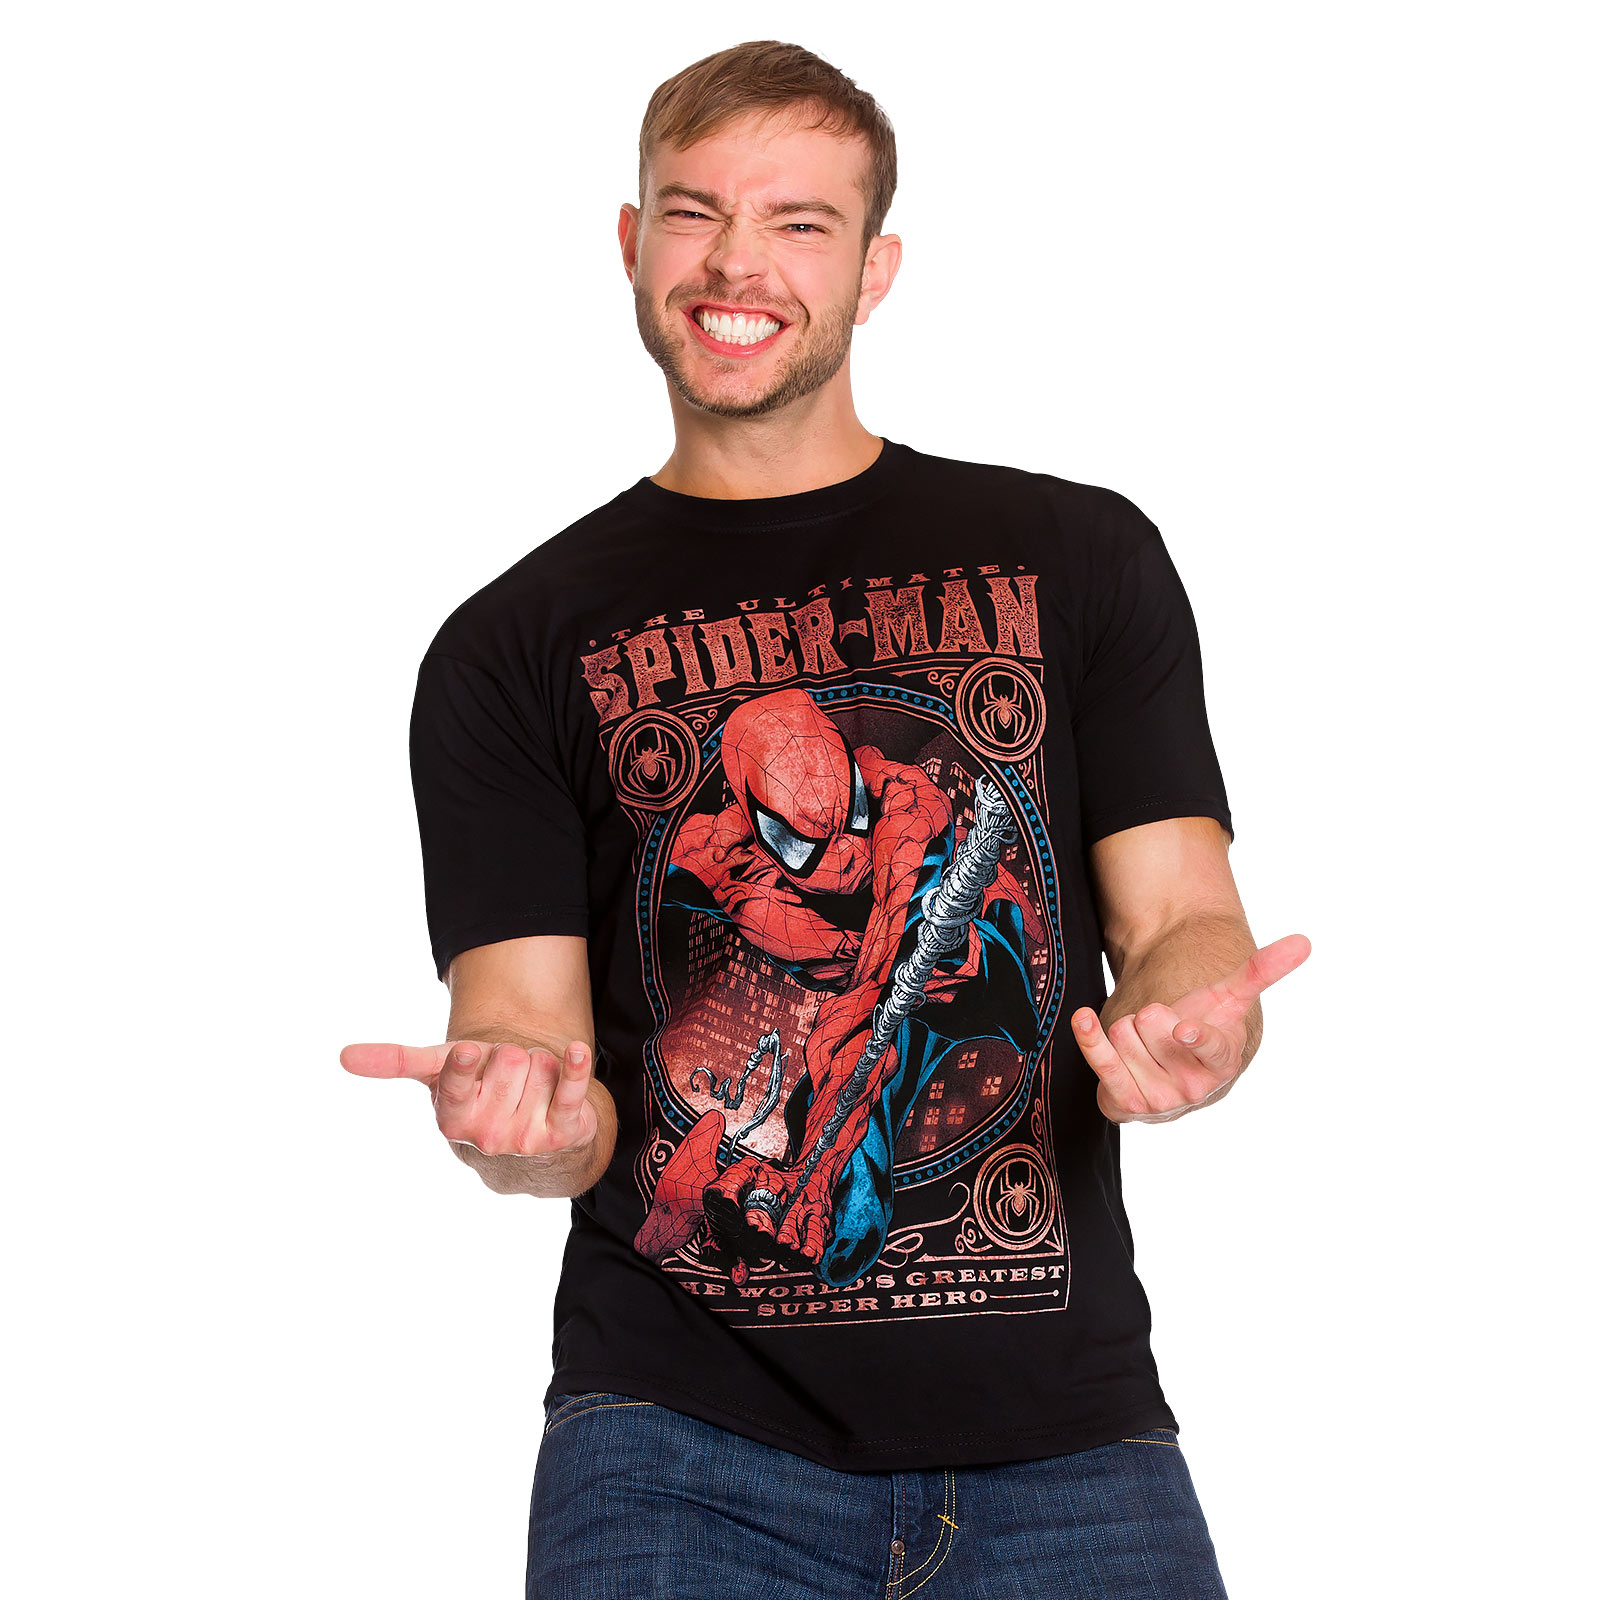 Spider-Man - T-shirt Super Héros le plus grand noir